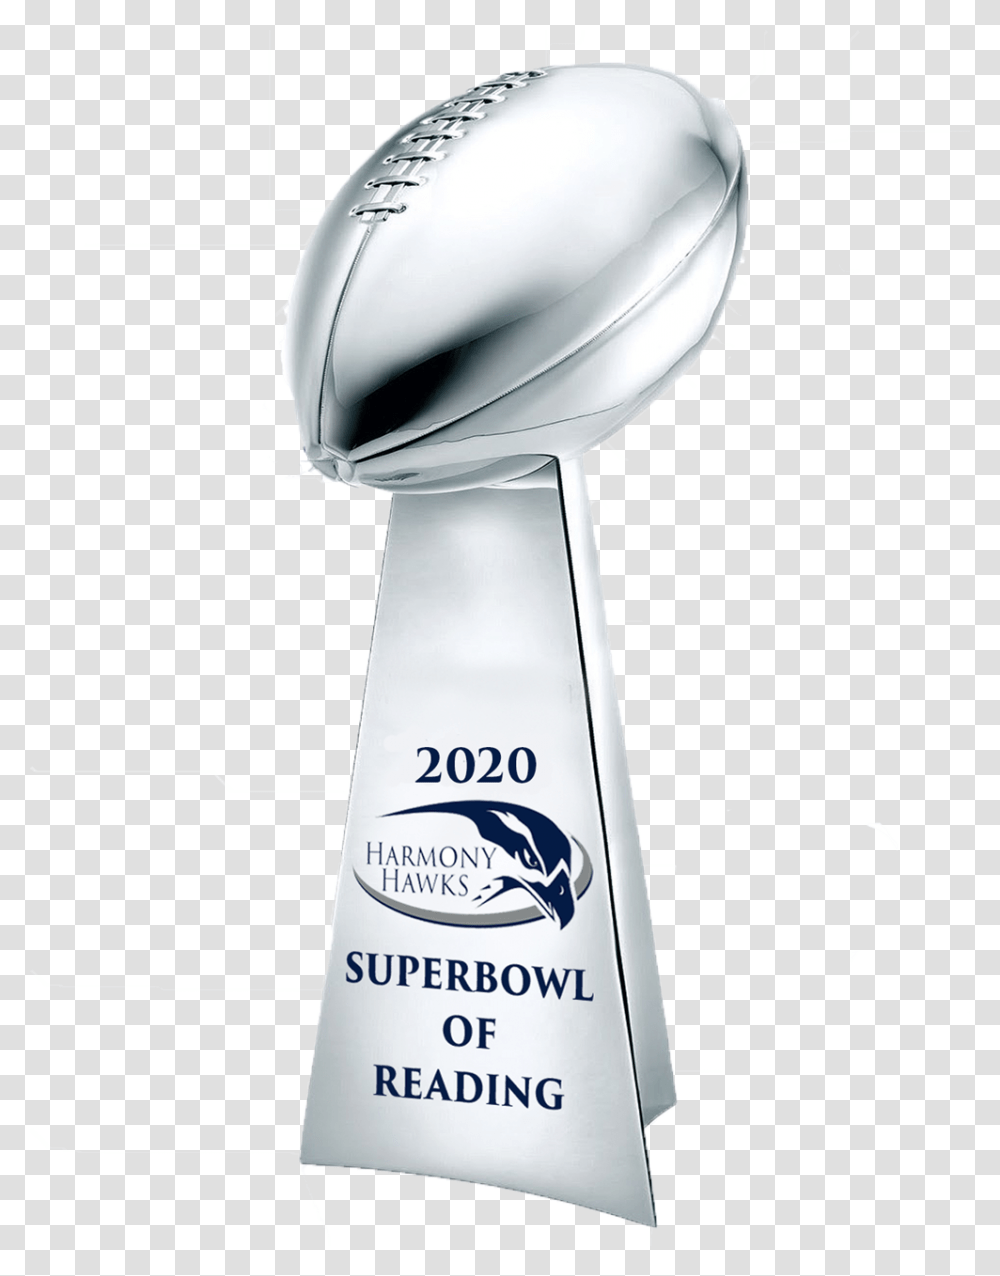 Super Bowl Trophy, Mixer, Appliance Transparent Png